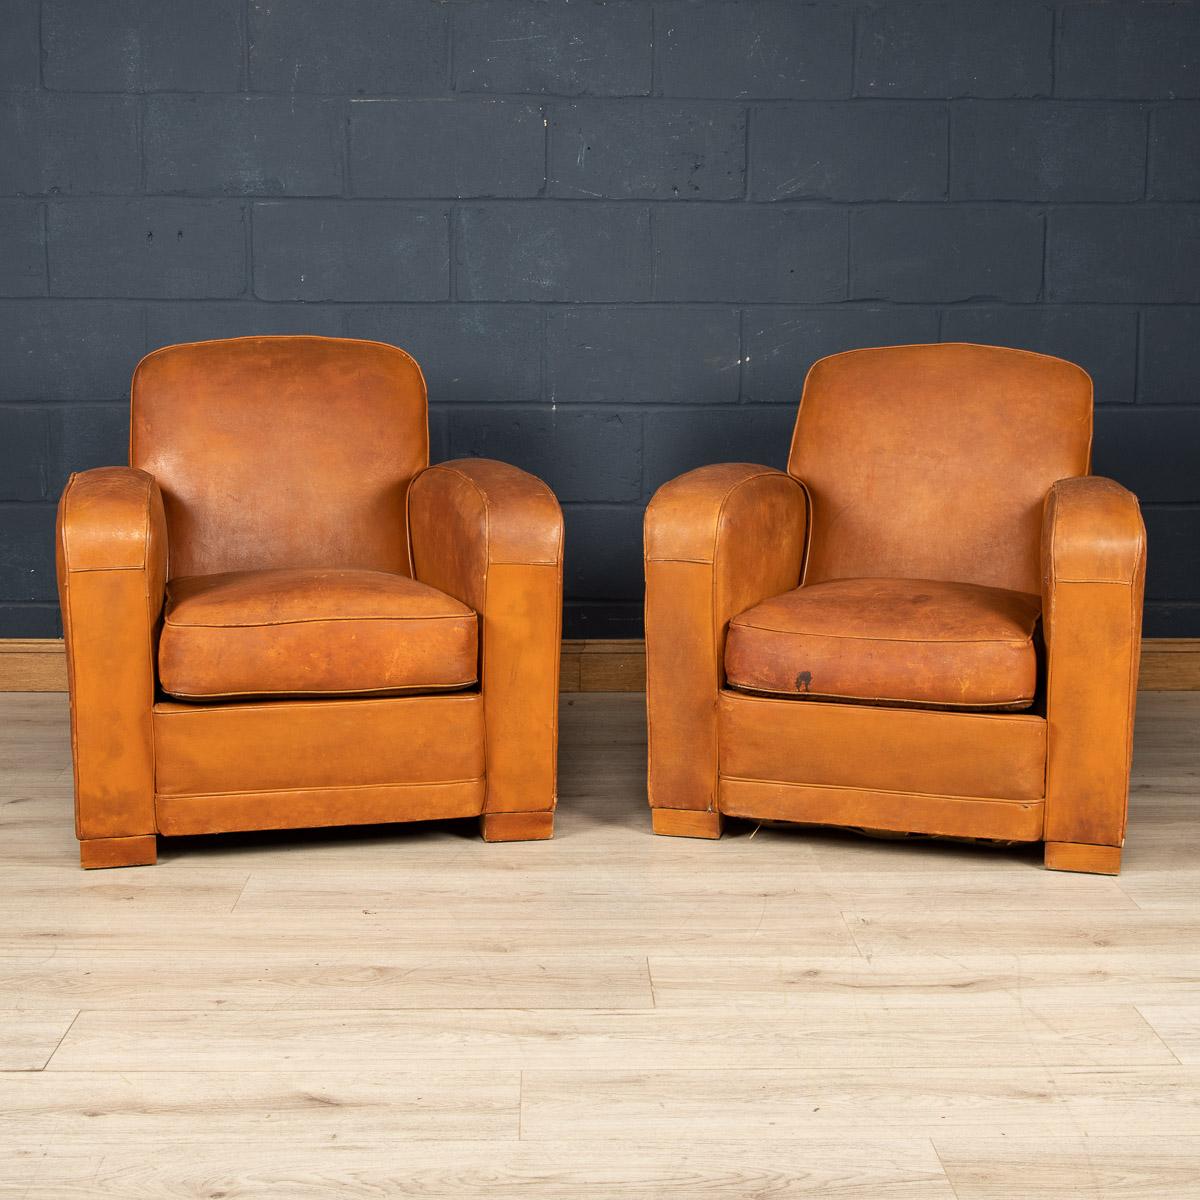 Ein wunderschönes Paar französischer Lederclubsessel, um 1950. Diese Sessel strahlen seit ihrer Entstehung Mitte des 20. Jahrhunderts bis in die heutige Zeit Klasse und Raffinesse aus. Da es sich um das beliebte Art-Déco-Modell handelt, sind sie